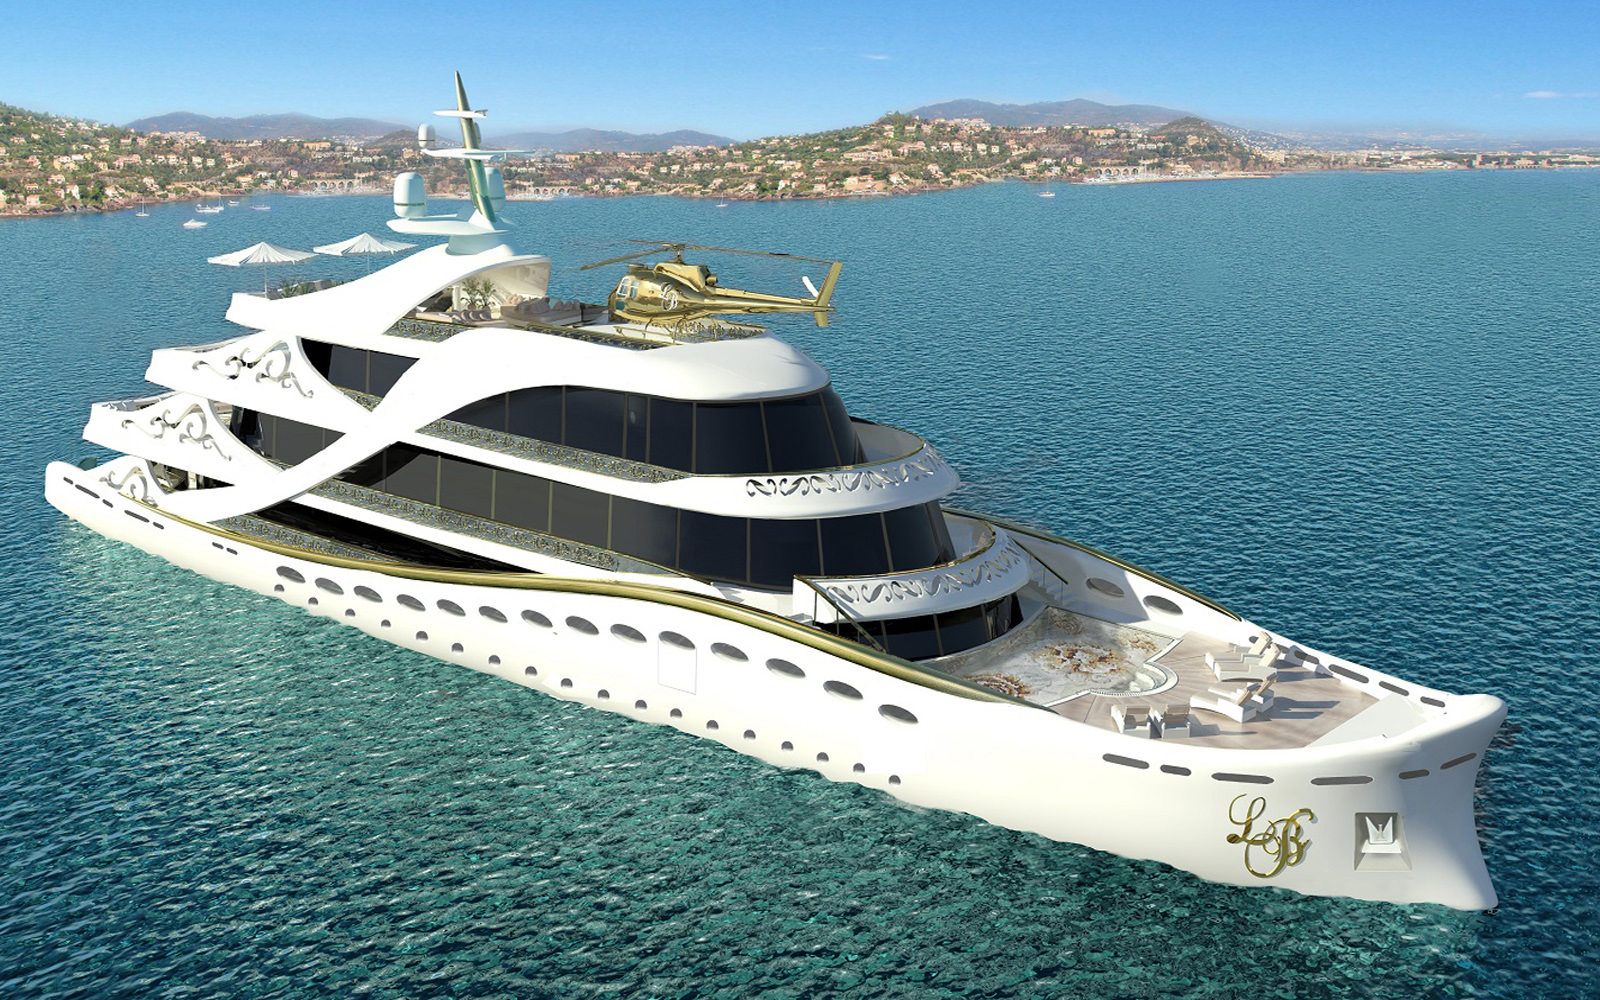 New publicity about Luxury Super Yacht La Belle